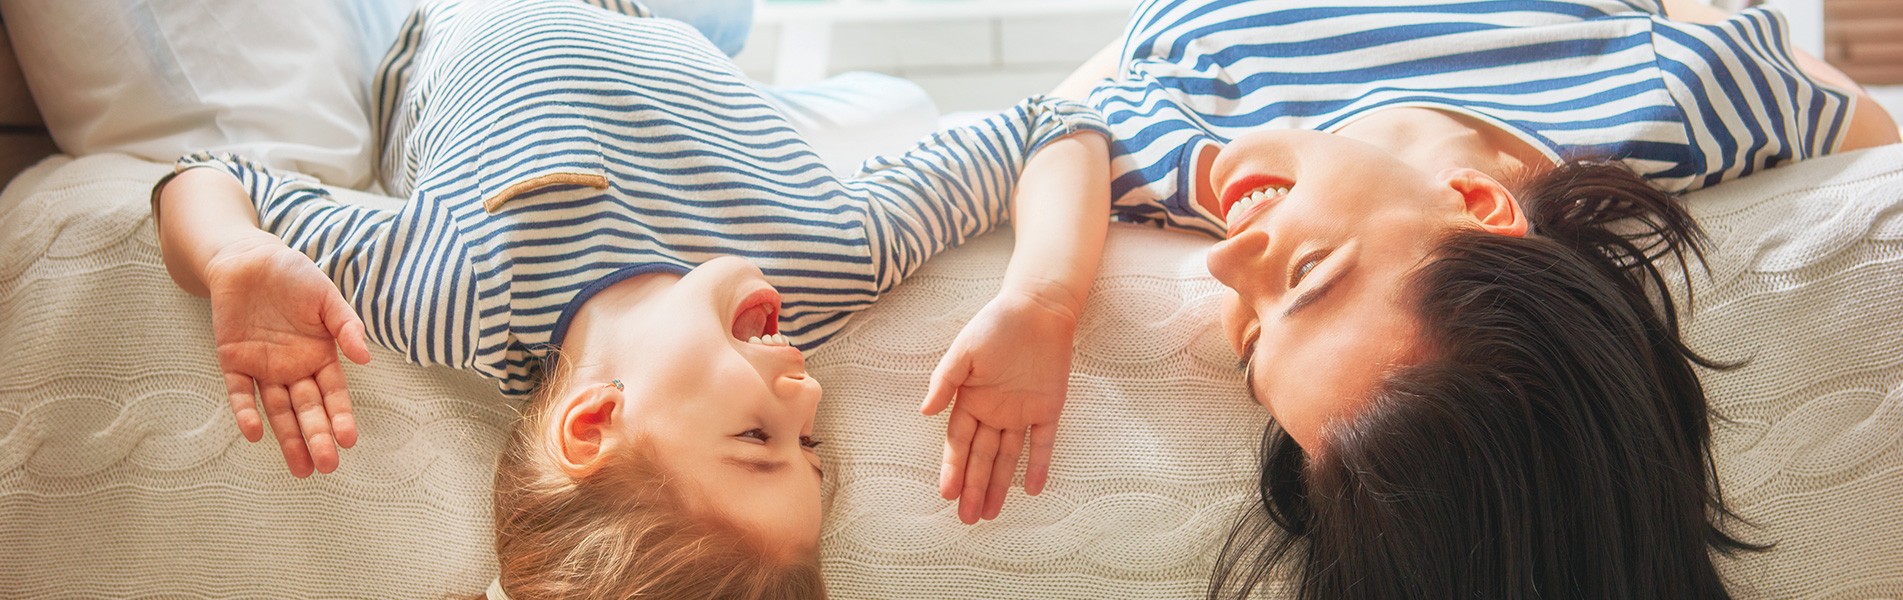 ¿Cómo elegir el colchón adecuado para su hijo?